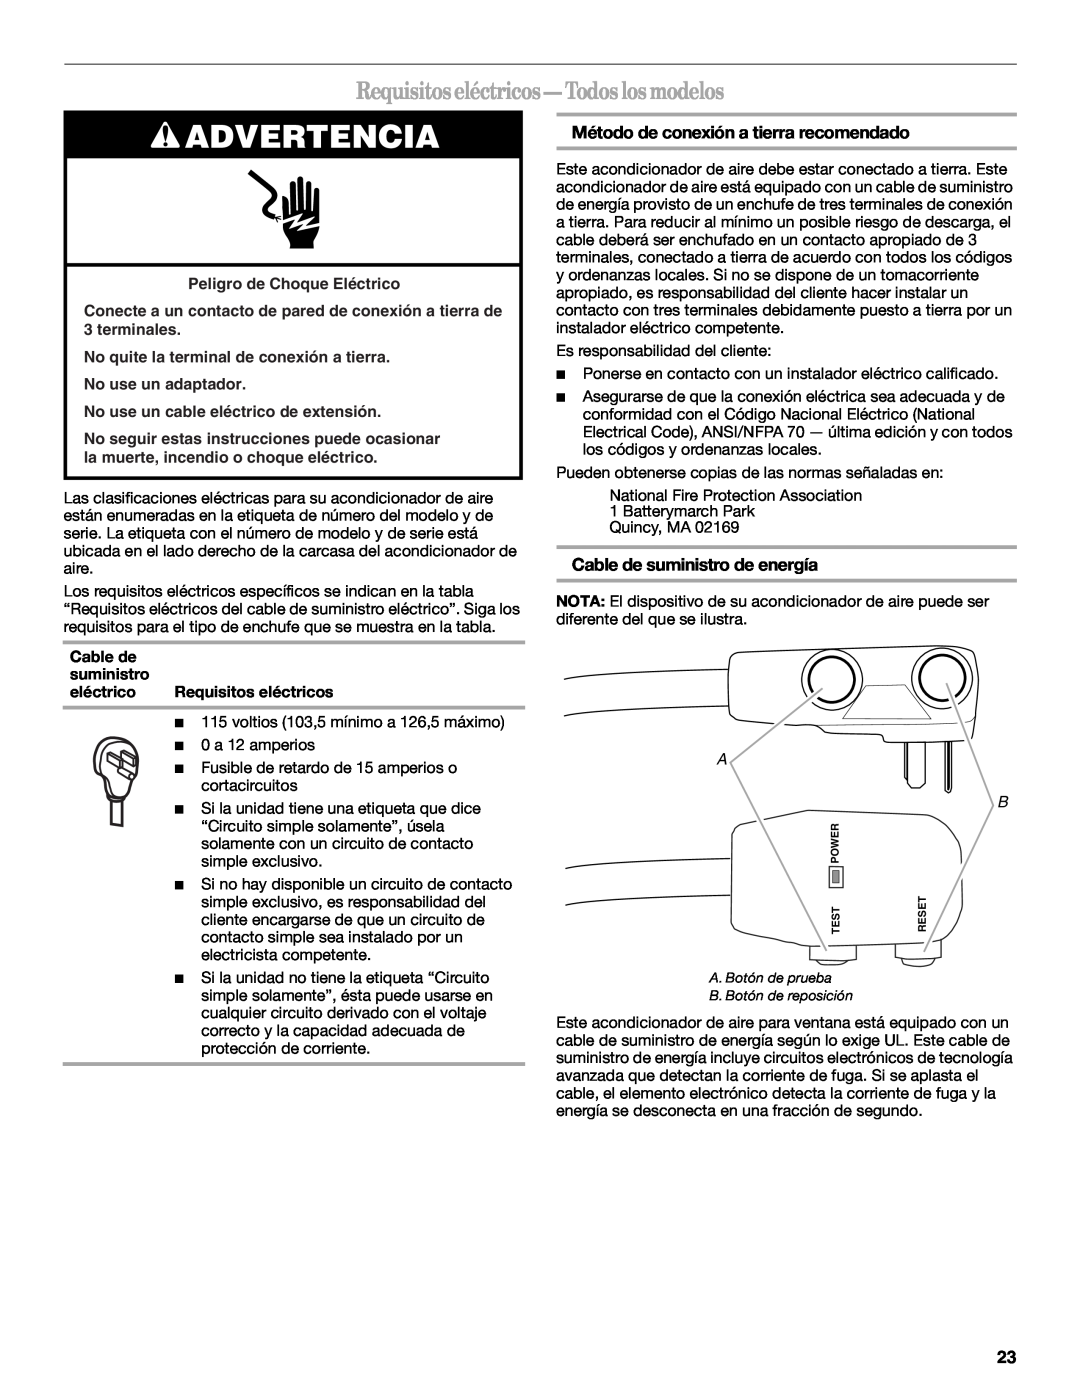 Whirlpool 66161279 manual Advertencia, Requisitos eléctricos - Todos los modelos, Método de conexión a tierra recomendado 